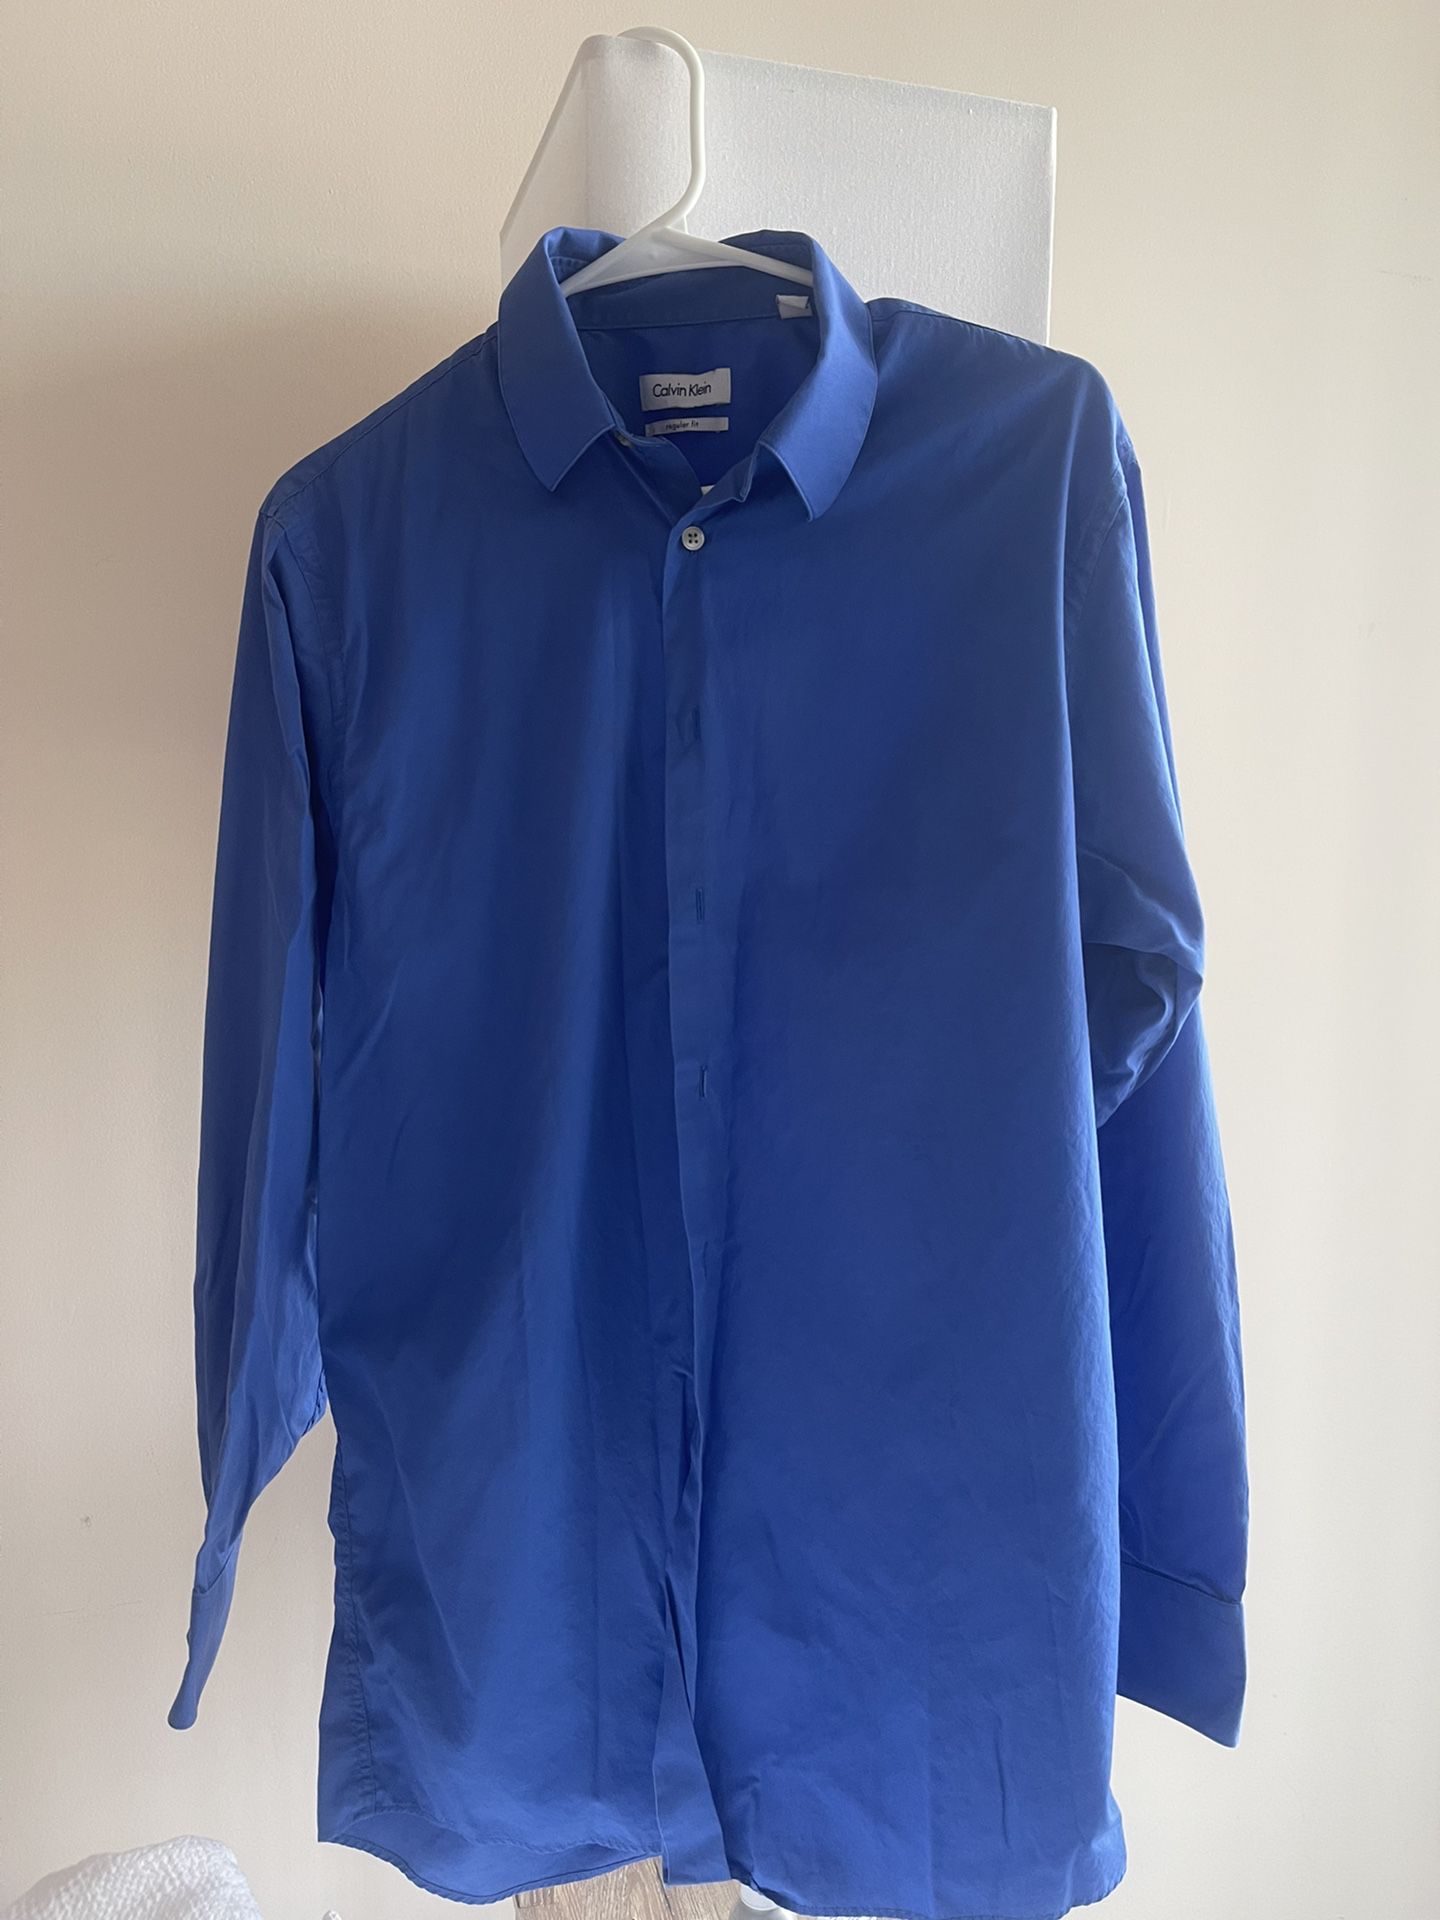 Calvin Klein Regular Fit 15 1/2 32/33 Long Sleeve Button Down Dress Shirt - Royal Blue